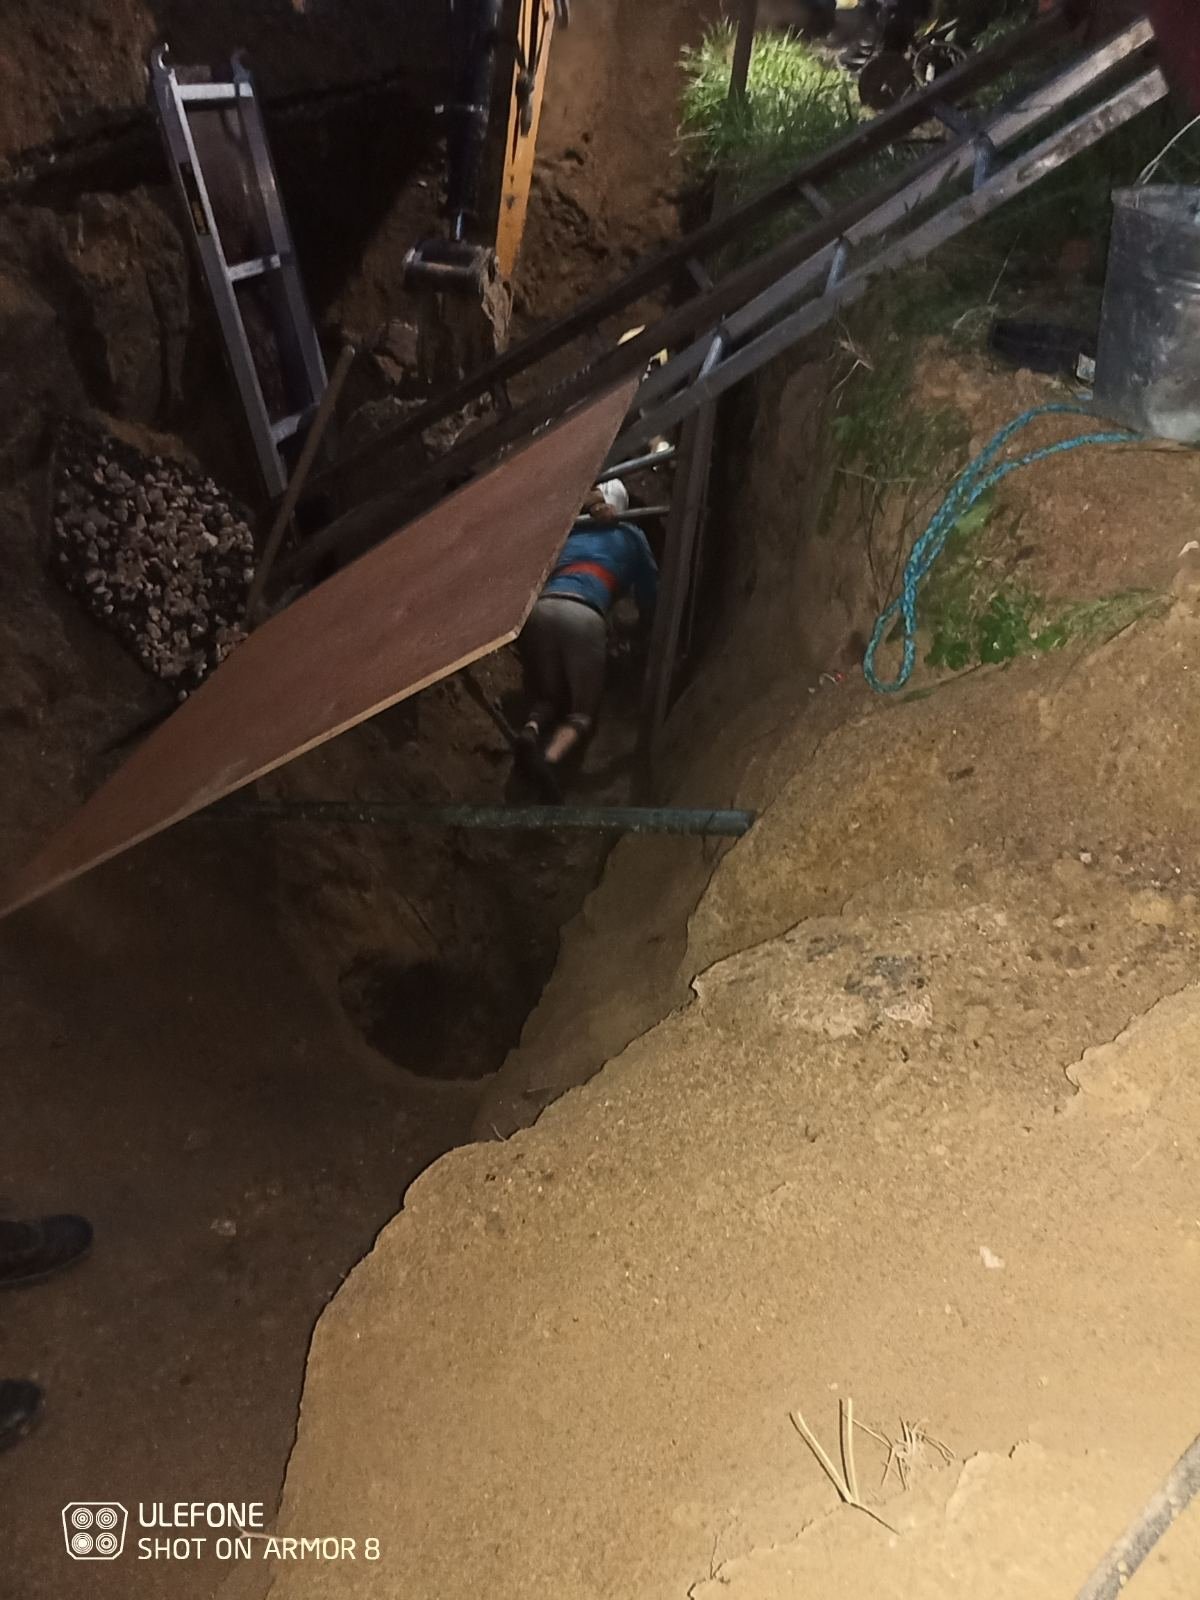 FOTO Mun.Chișinău: Doi bărbați, blocați sub pământ în timpul unor săpături. 4 echipe de salvatori au intervenit